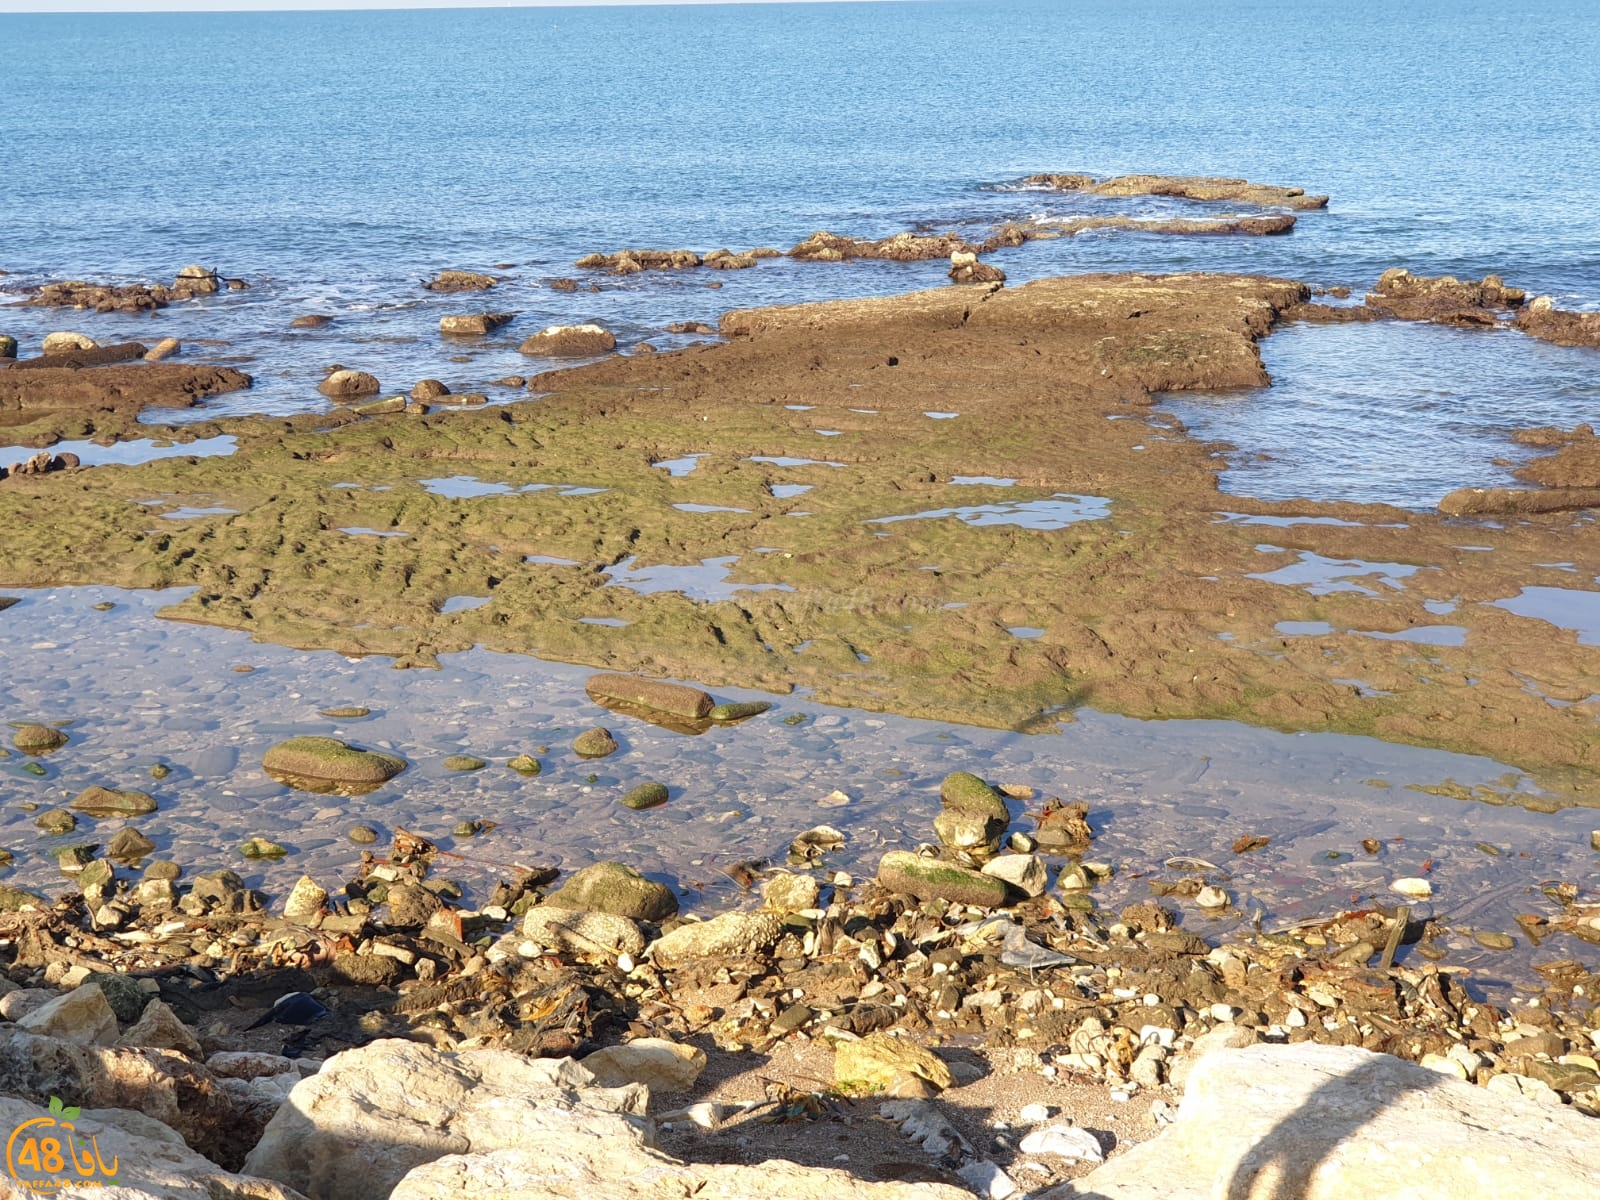  فيديو: تراجع في مستوى مياه البحر على شاطئ العجمي يافا